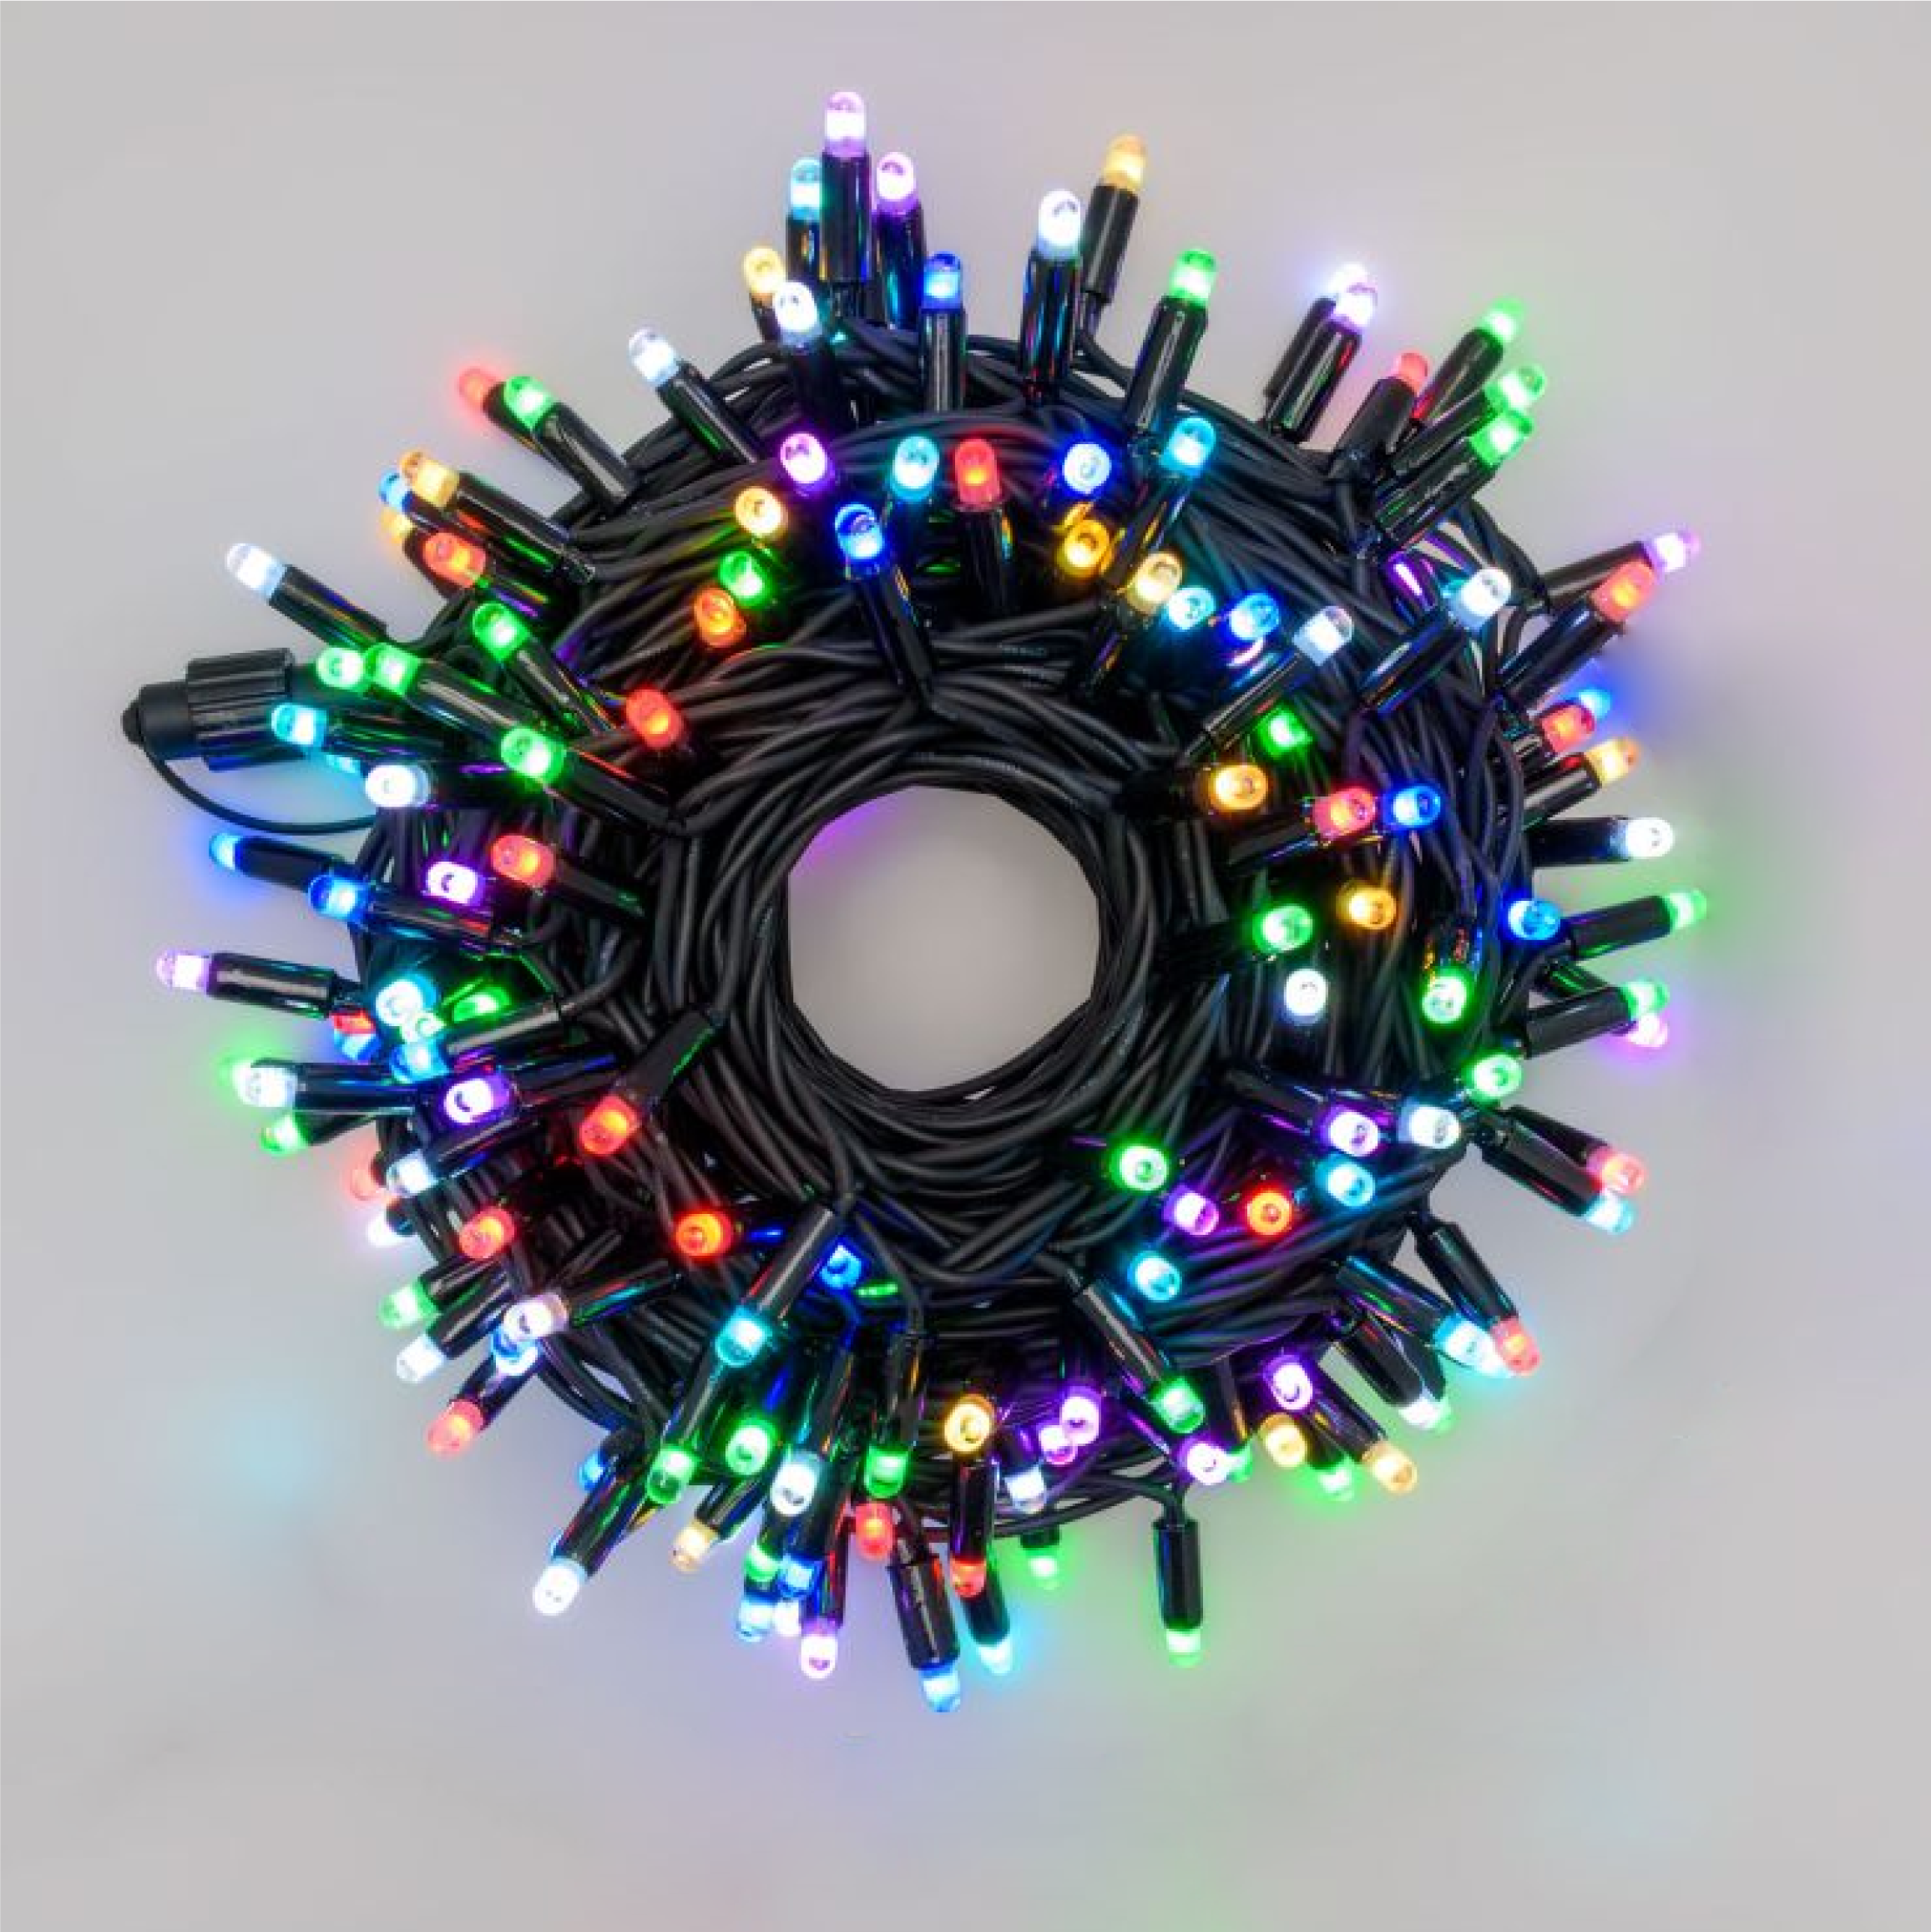 Välis- ja siseruumides kasutatav valguskett(LED tuled) 50 m PROLED RGB